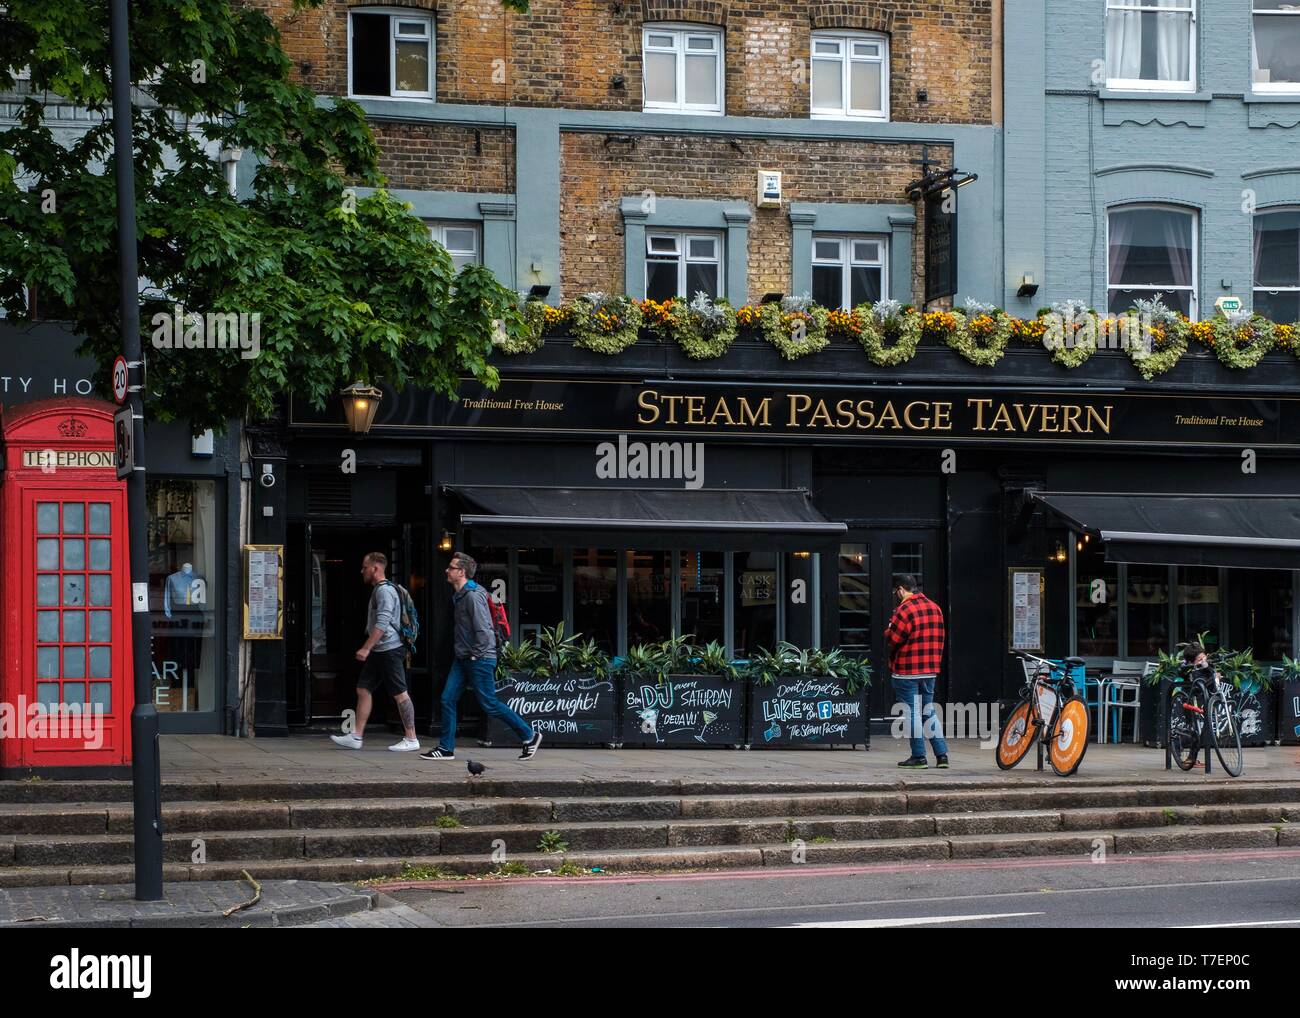 Le passage de vapeur tavern, Upper Street, Londres Banque D'Images